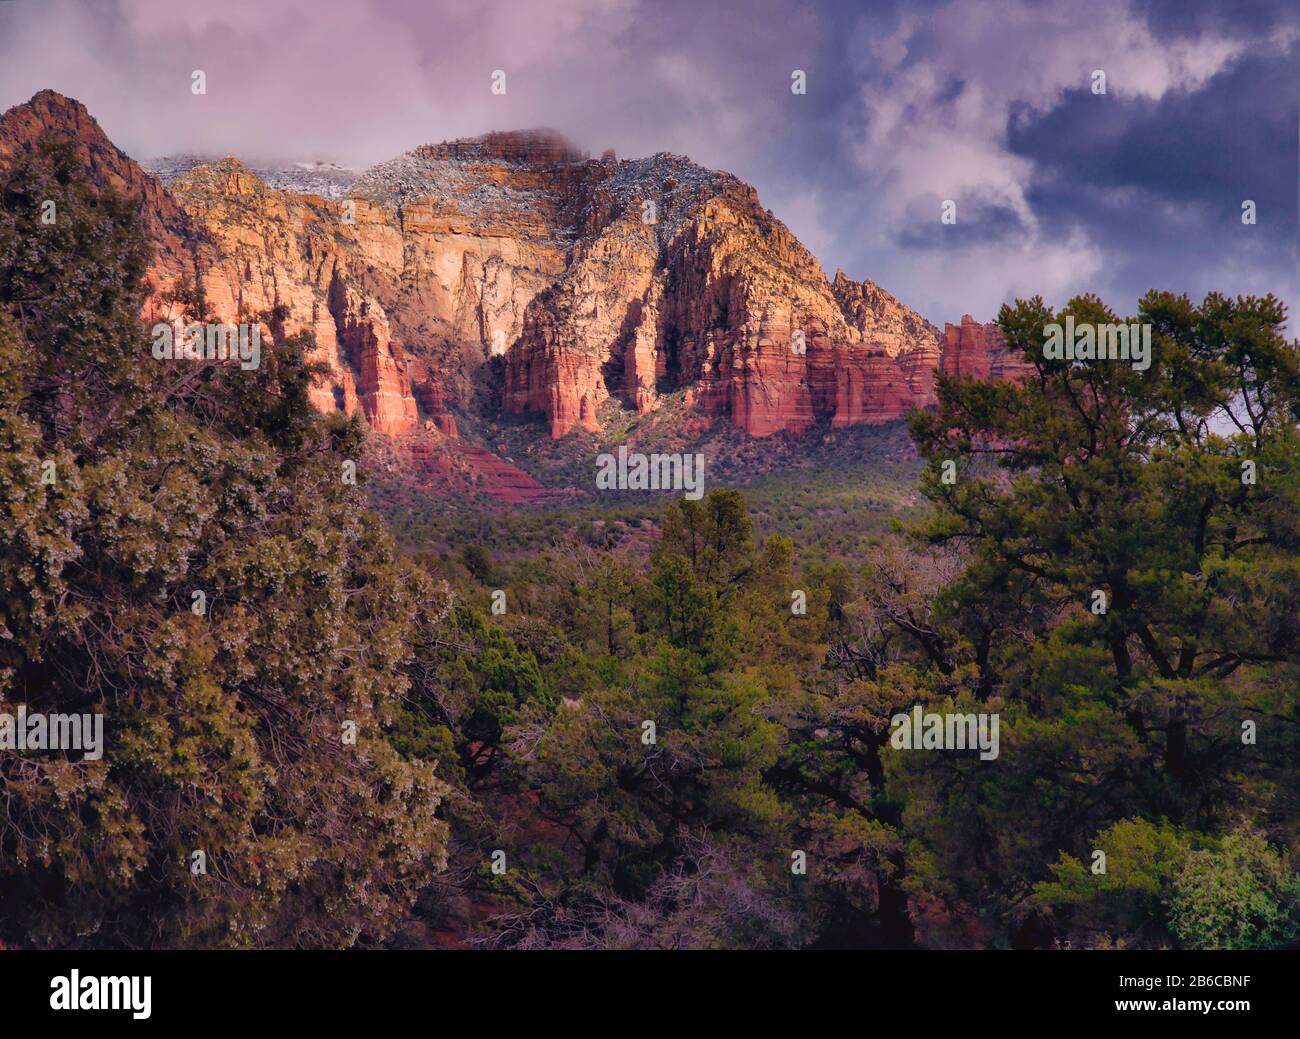 Sedona Arizona Red Rocks leuchten und leuchten in der Fernlandschaft kurz nach einem bewölkten Himmel, der Regen fallen ließ Stockfoto